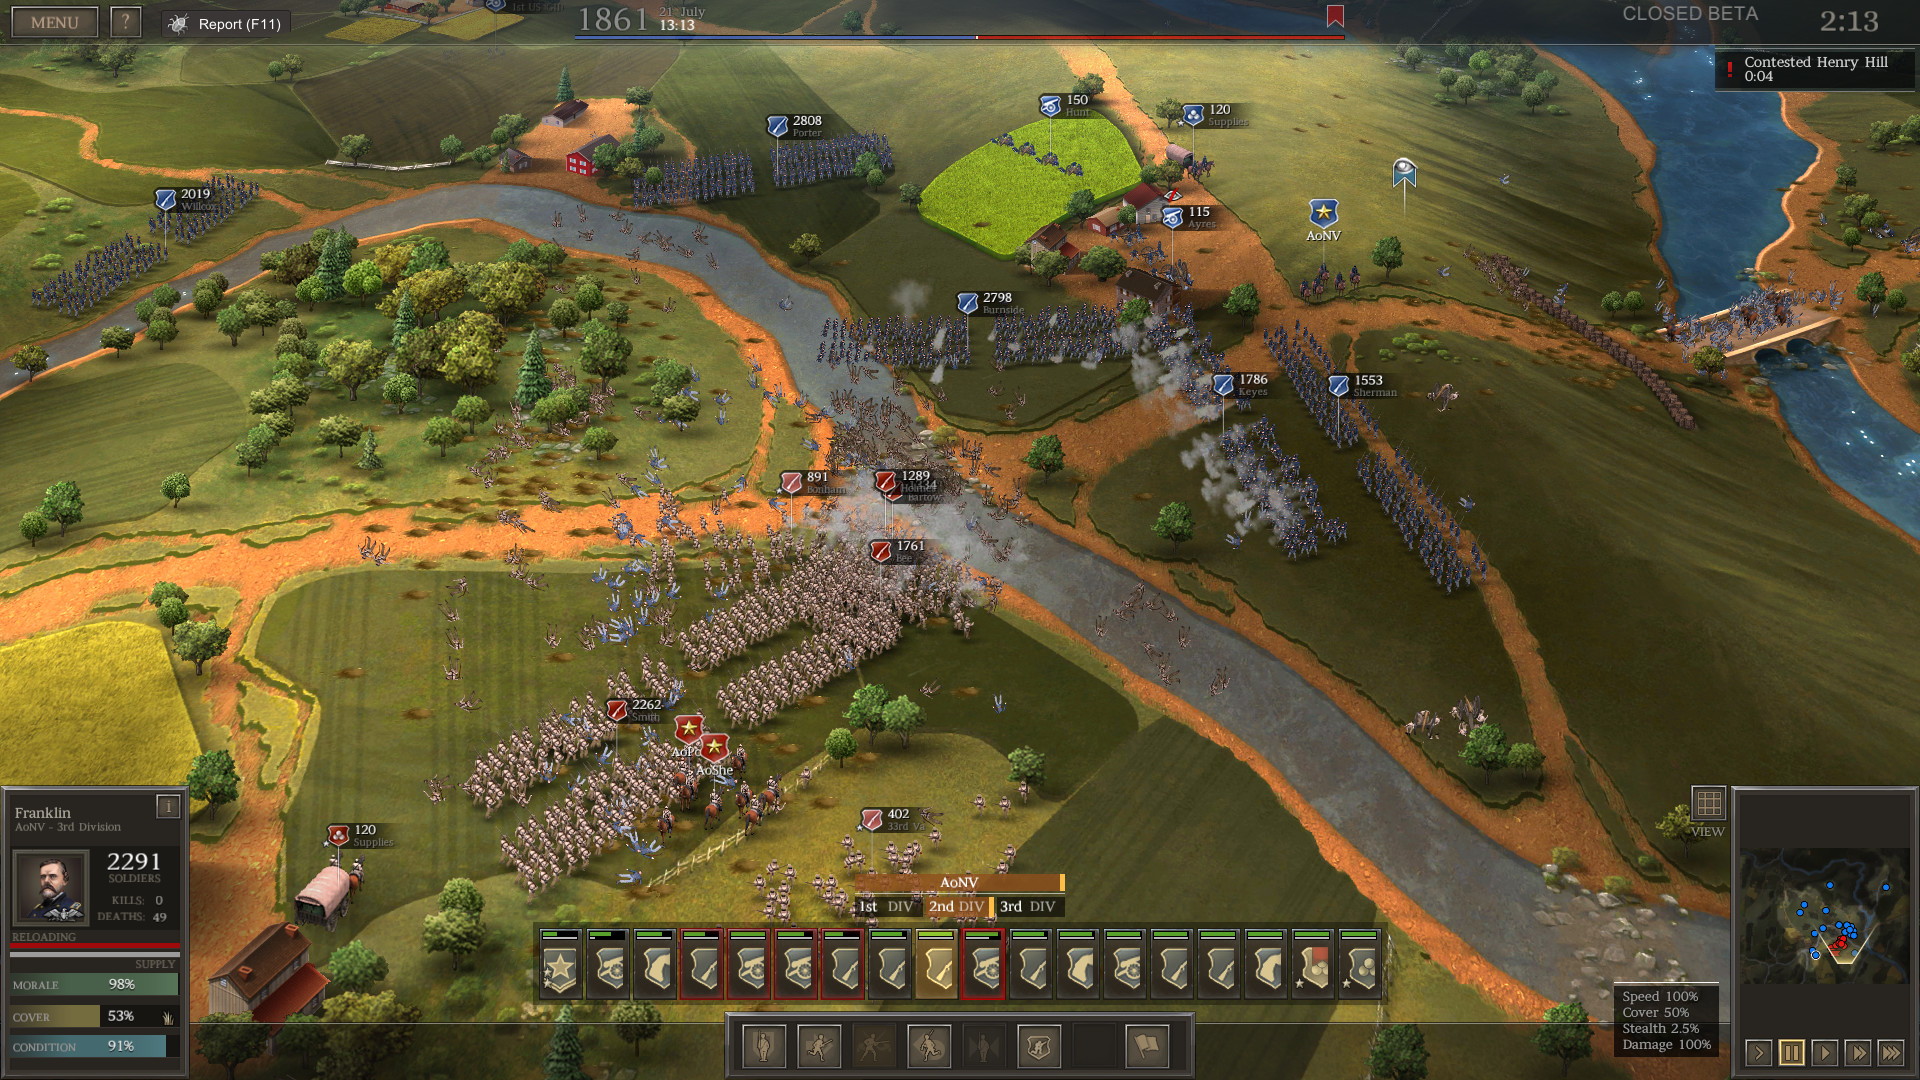 Ultimate General: Civil War - screenshot 6